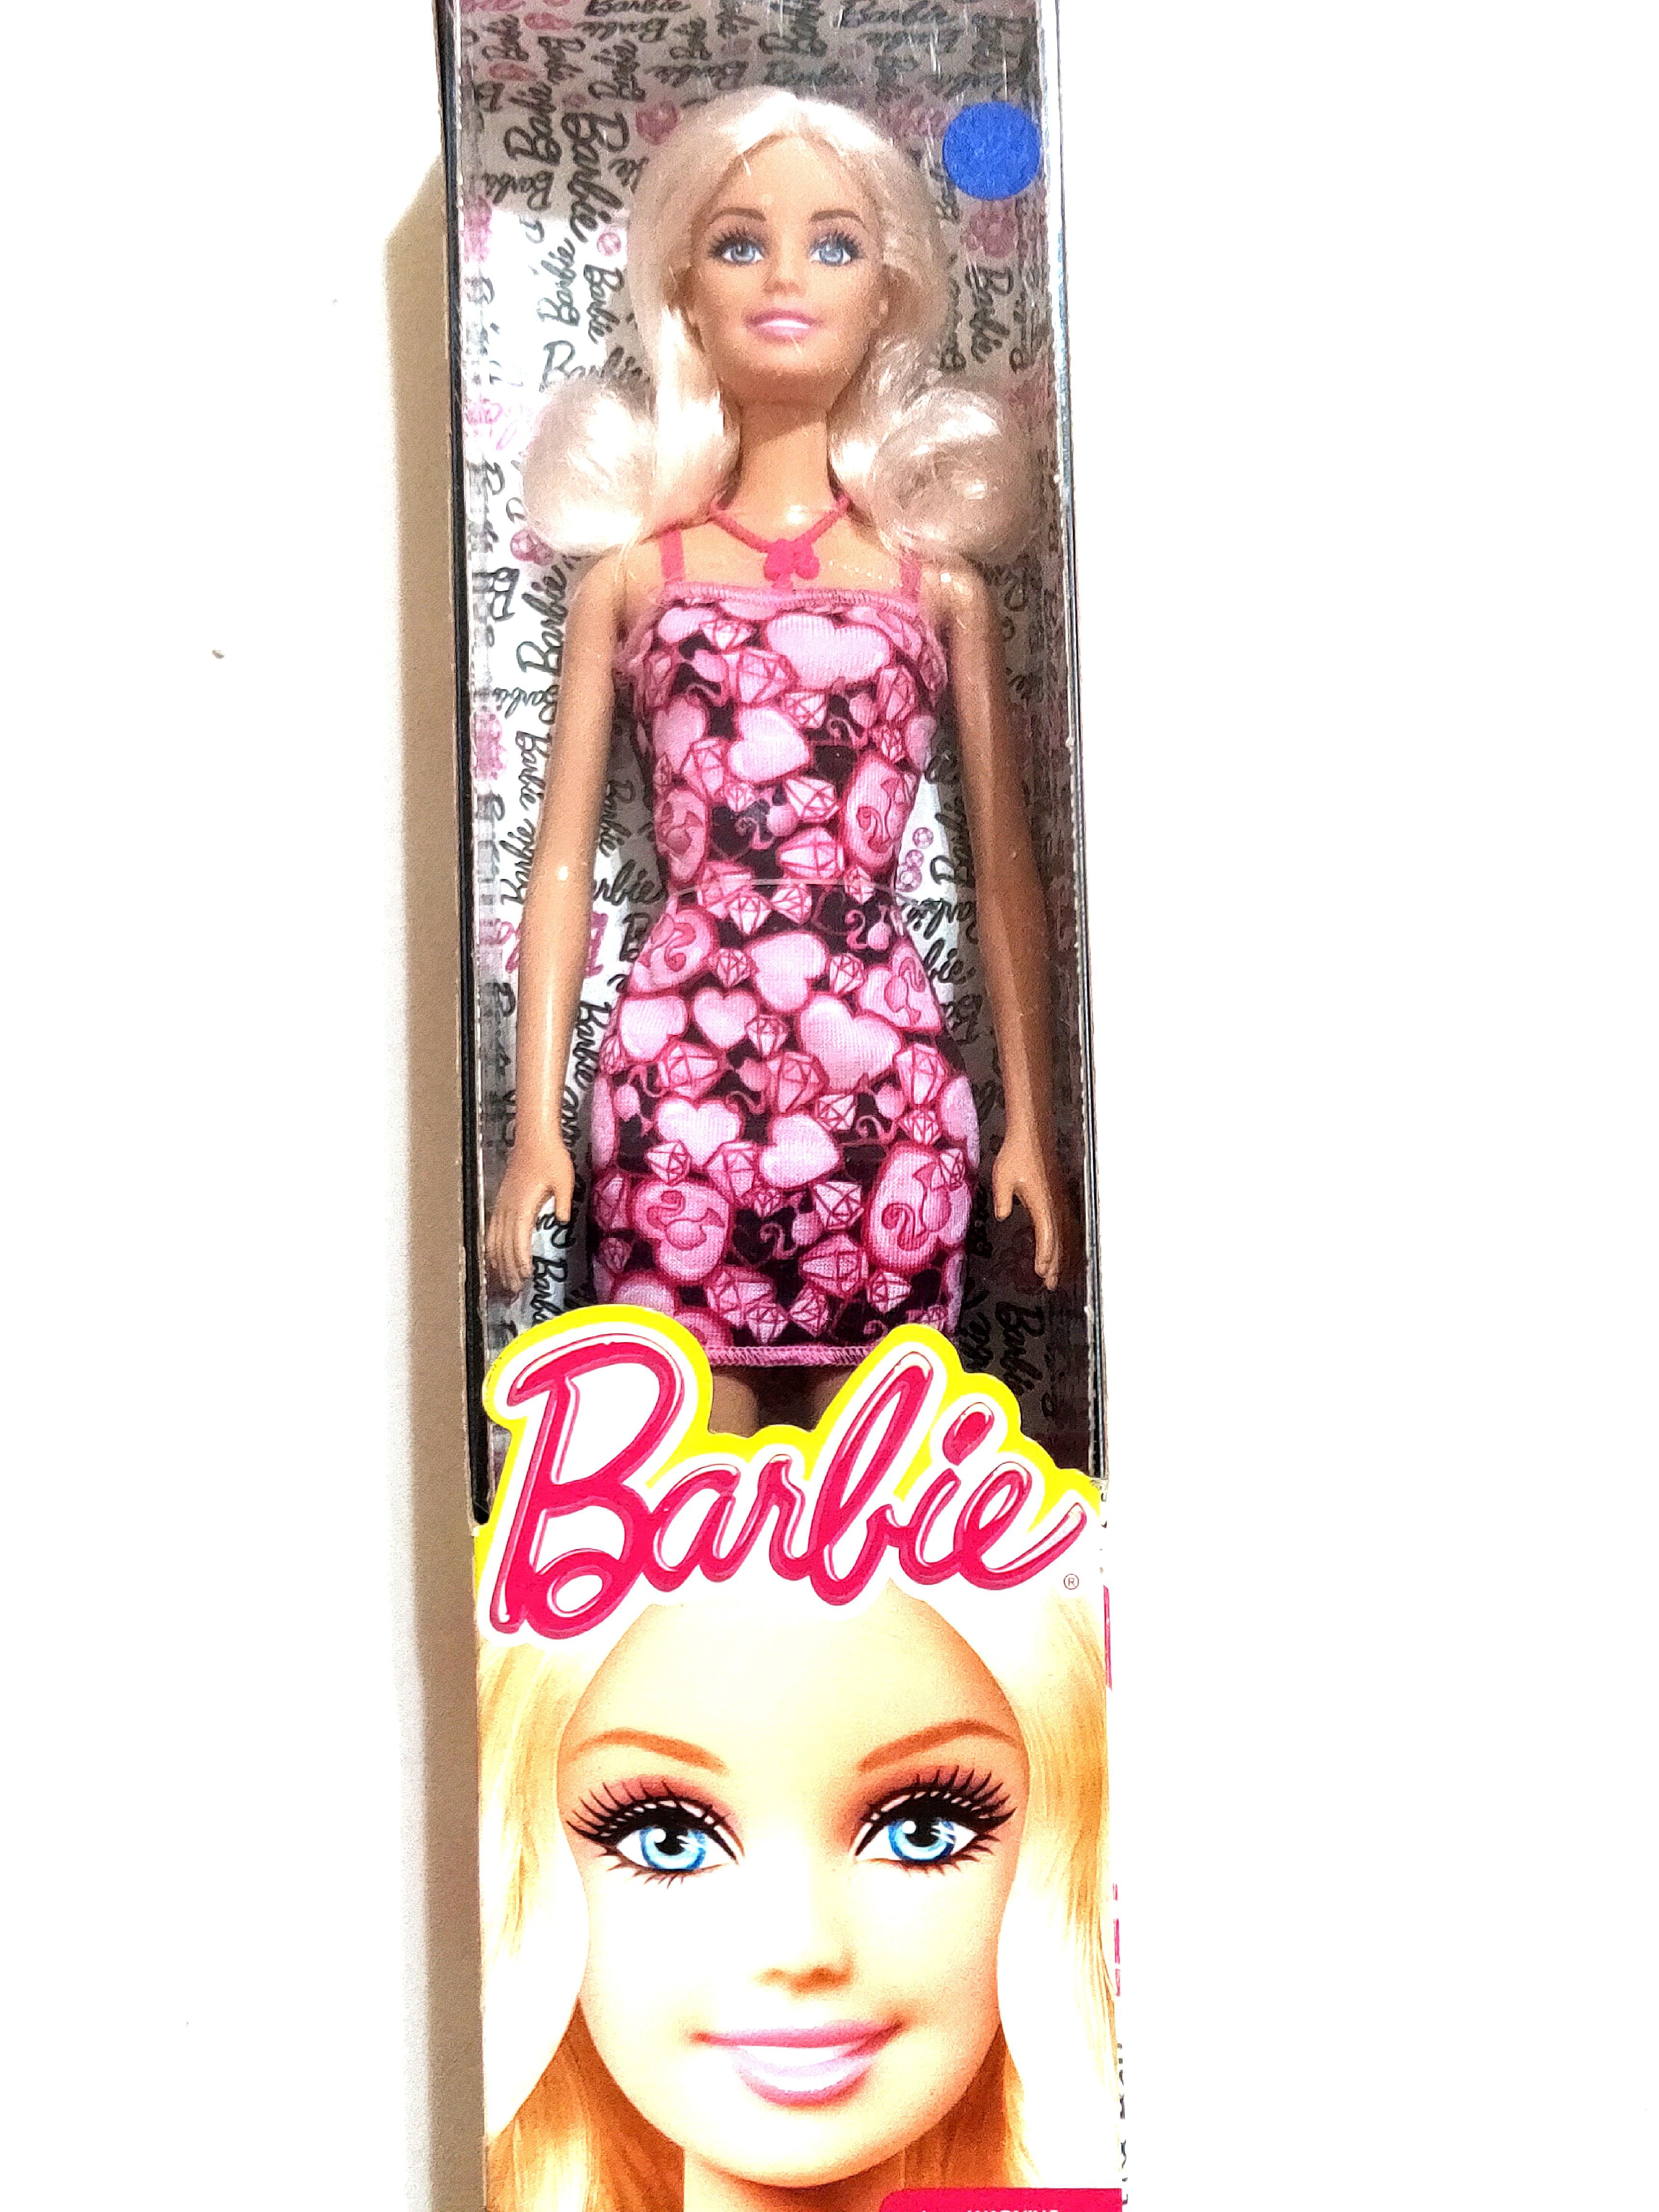 brand new barbie dolls